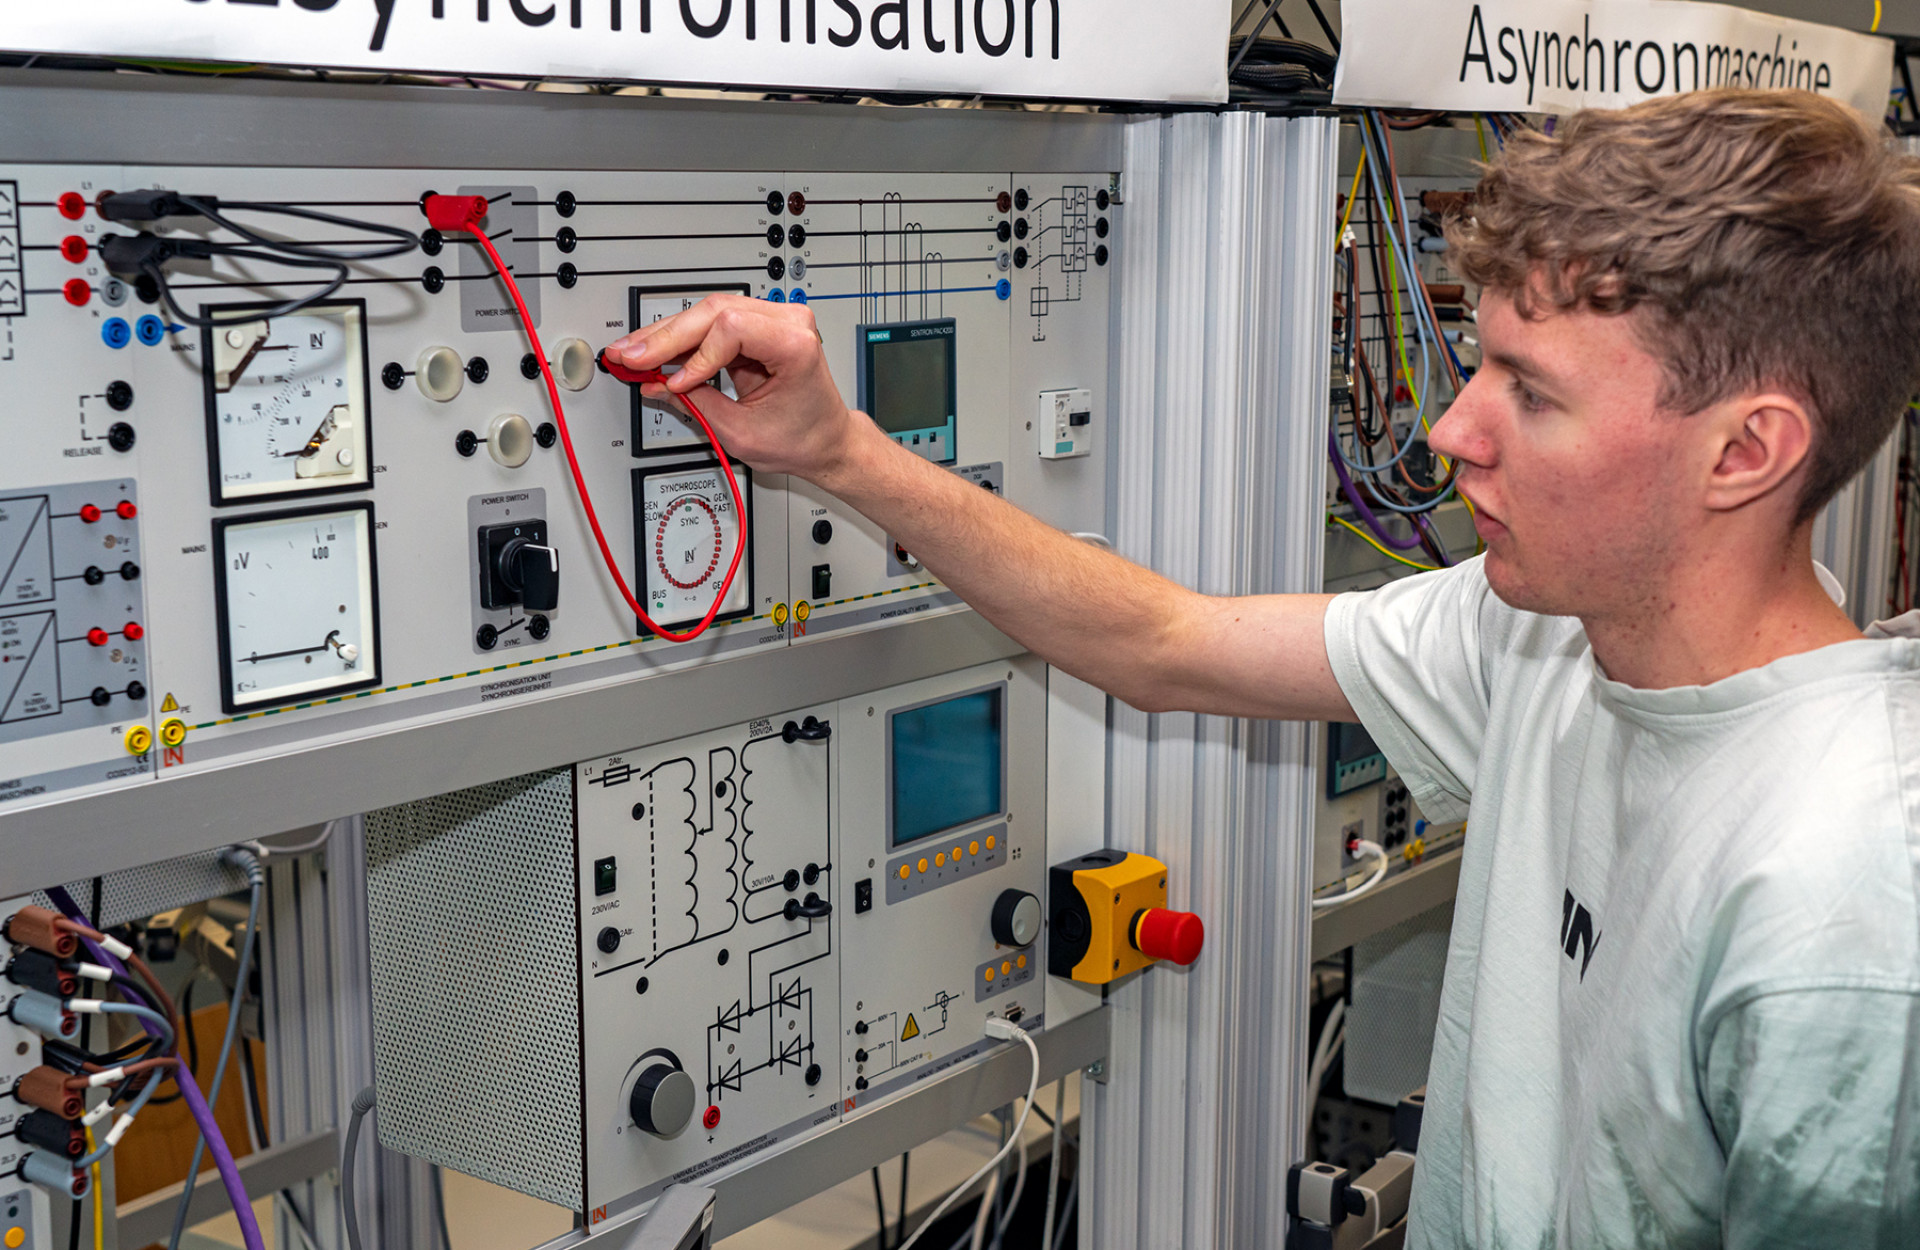 Studierender Jens Hagmeyer steht vor Modell Netzsynchronisation im Labor für Elektrische Systeme